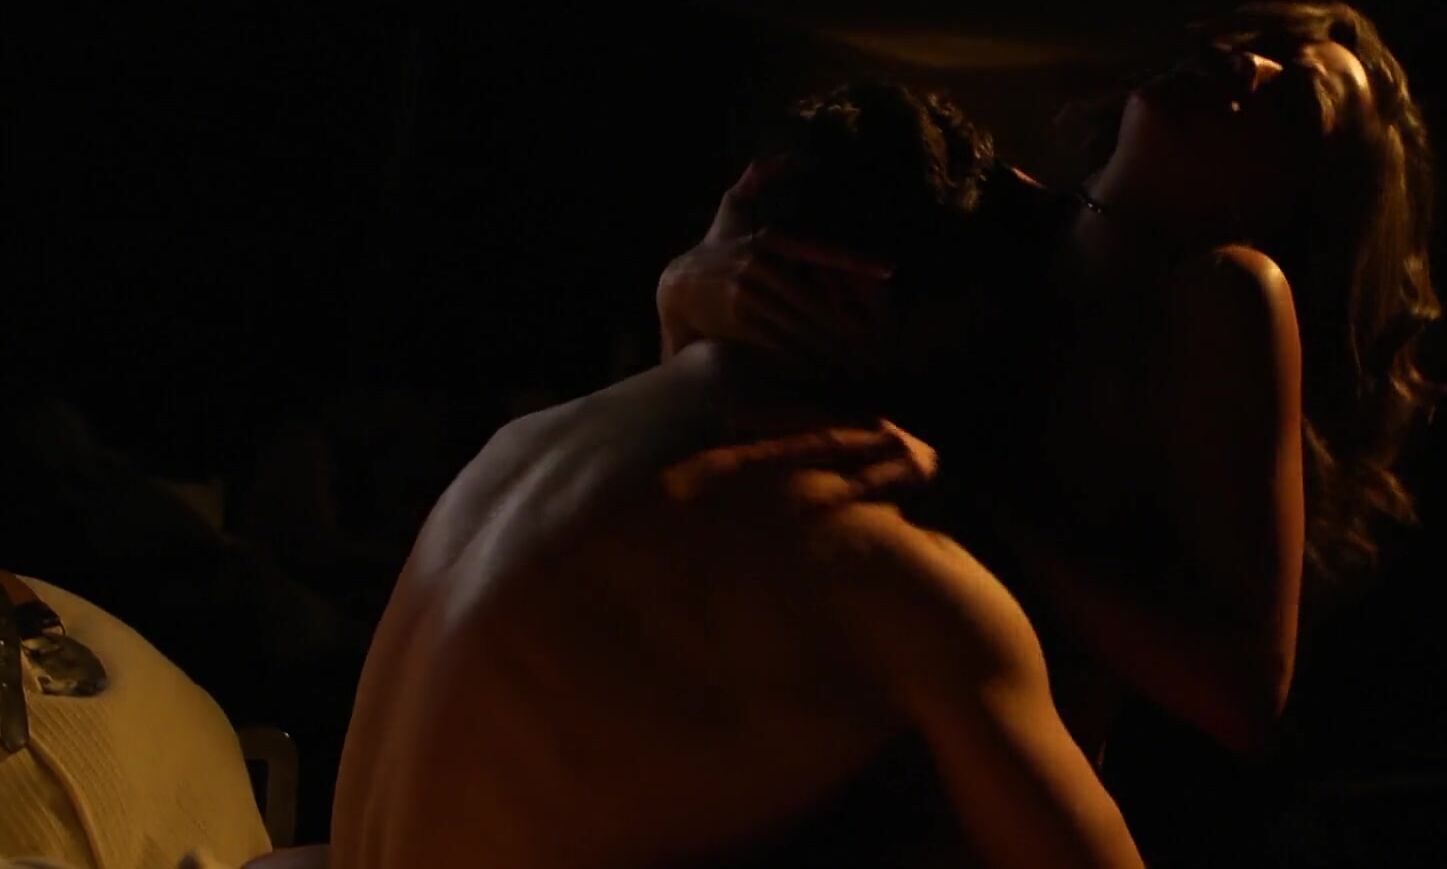 Camgirl Tempting Malena Morgan rides cock in the darkness in romantic hot movie sex scene Clip